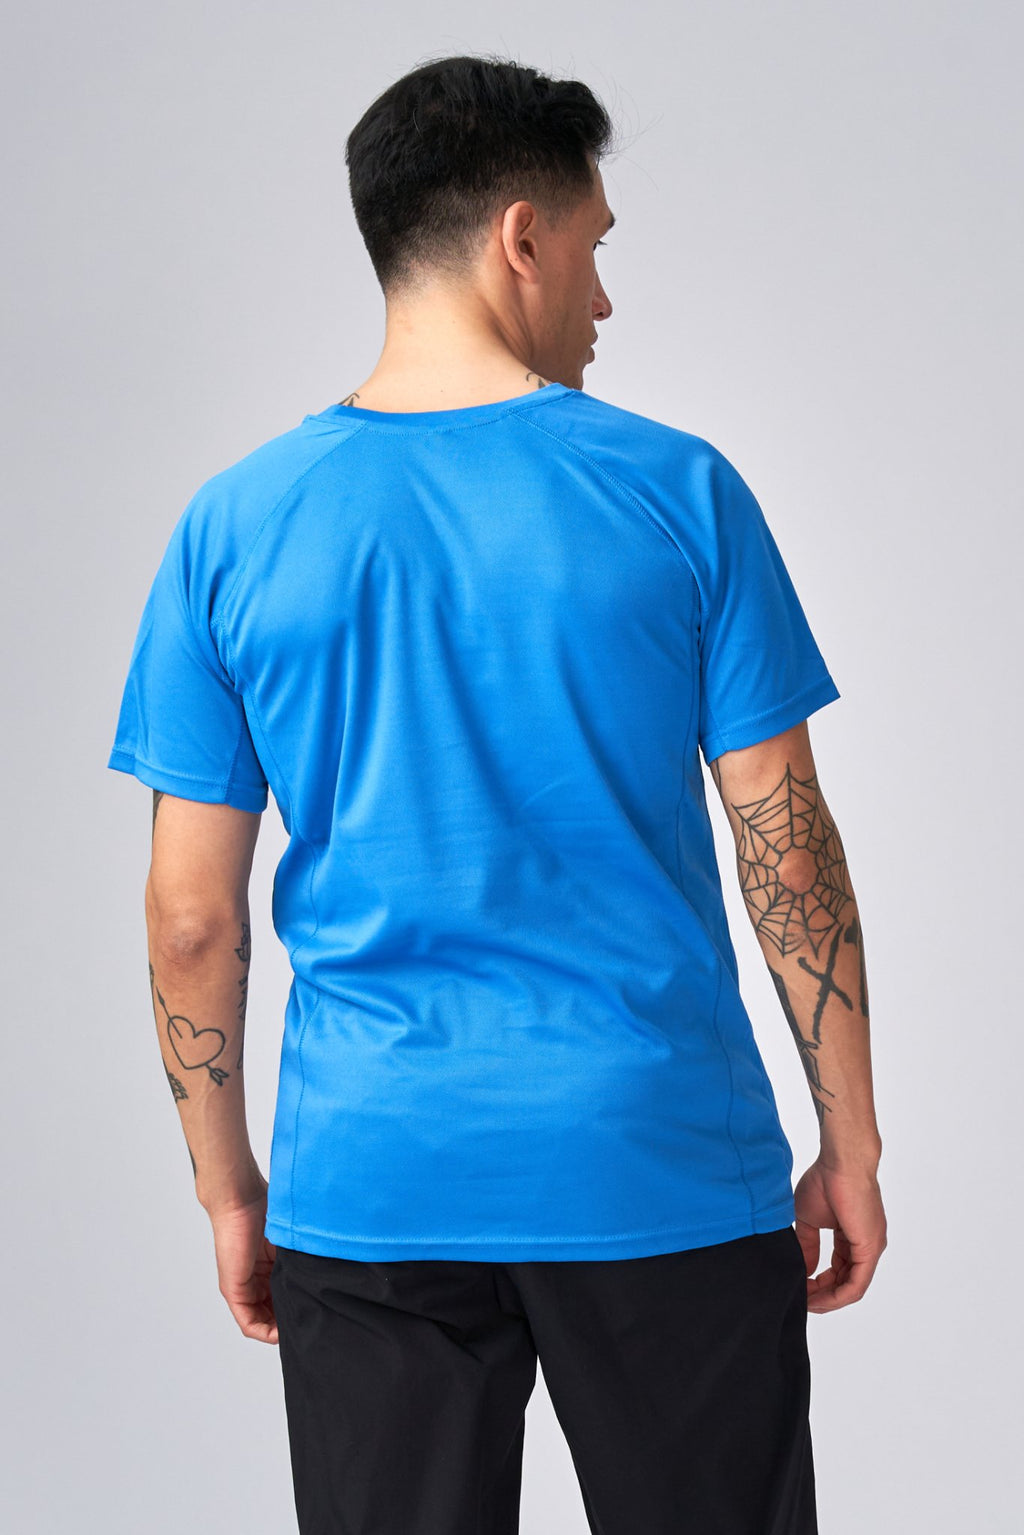 T-shirt d'entraînement - bleu